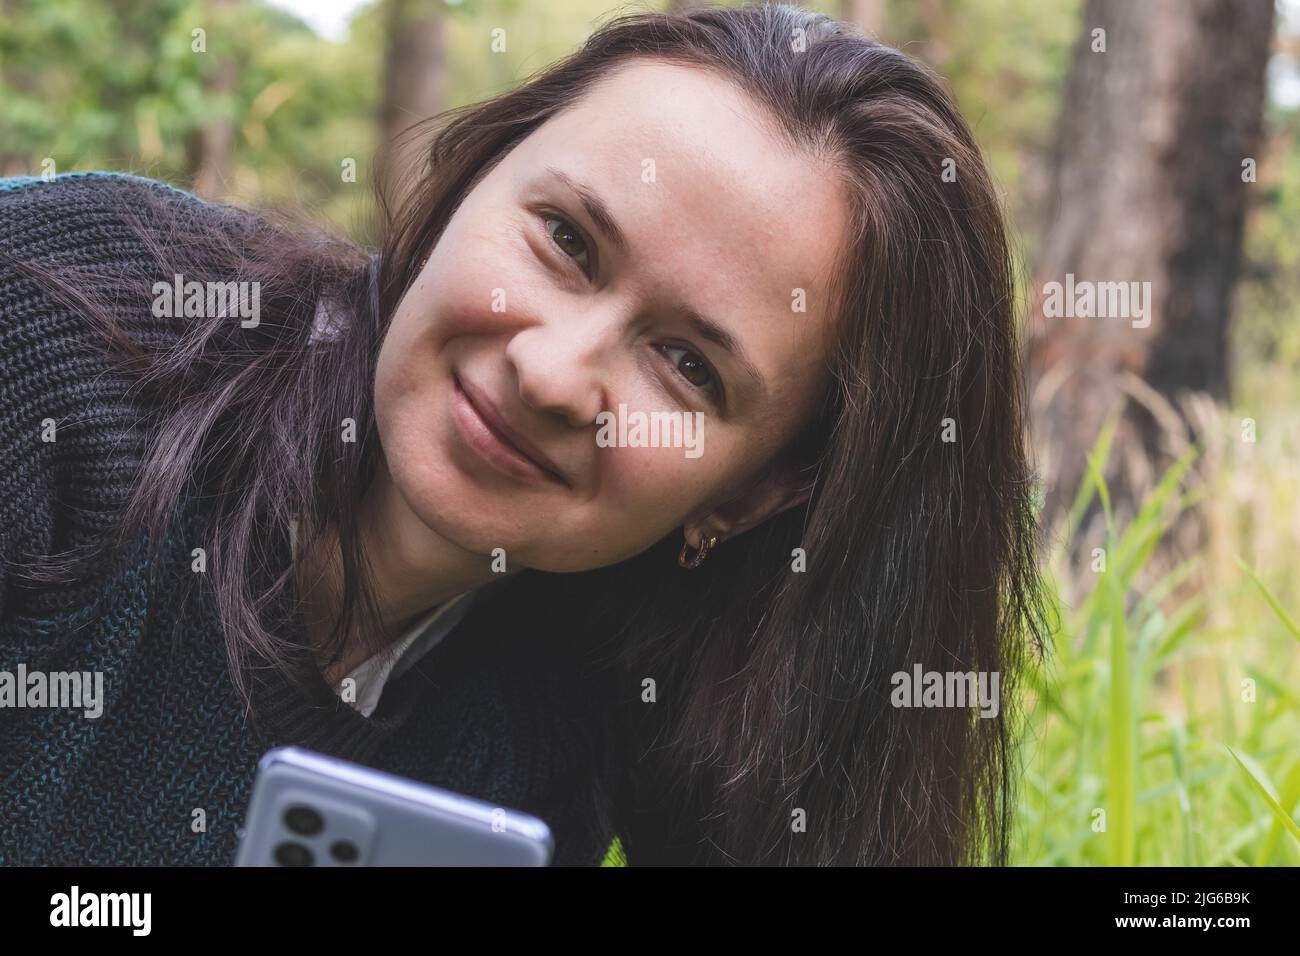 Retrato de una joven sonriente en un parque y mirando la cámara, sosteniendo el smartphone Foto de stock